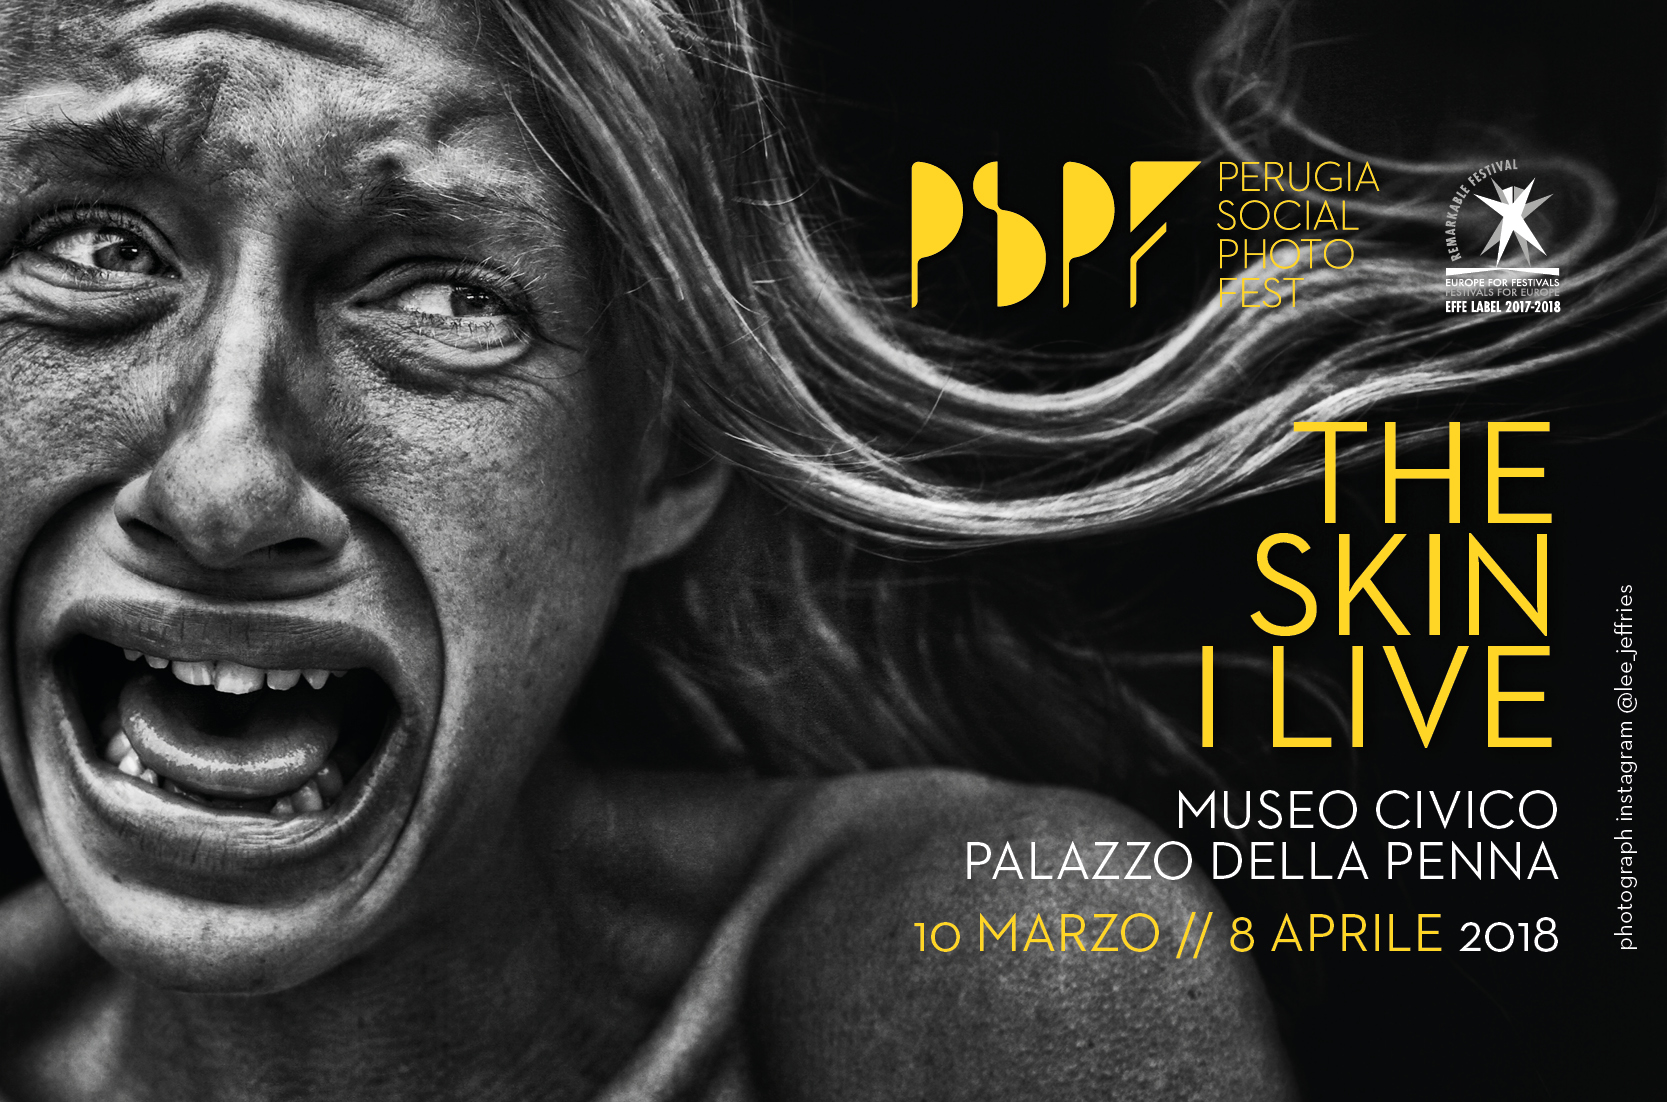 Ecco il programma della prossima edizione del PSPF – Perugia Social Photo Fest dedicato alla fotografia sociale e terapeutica